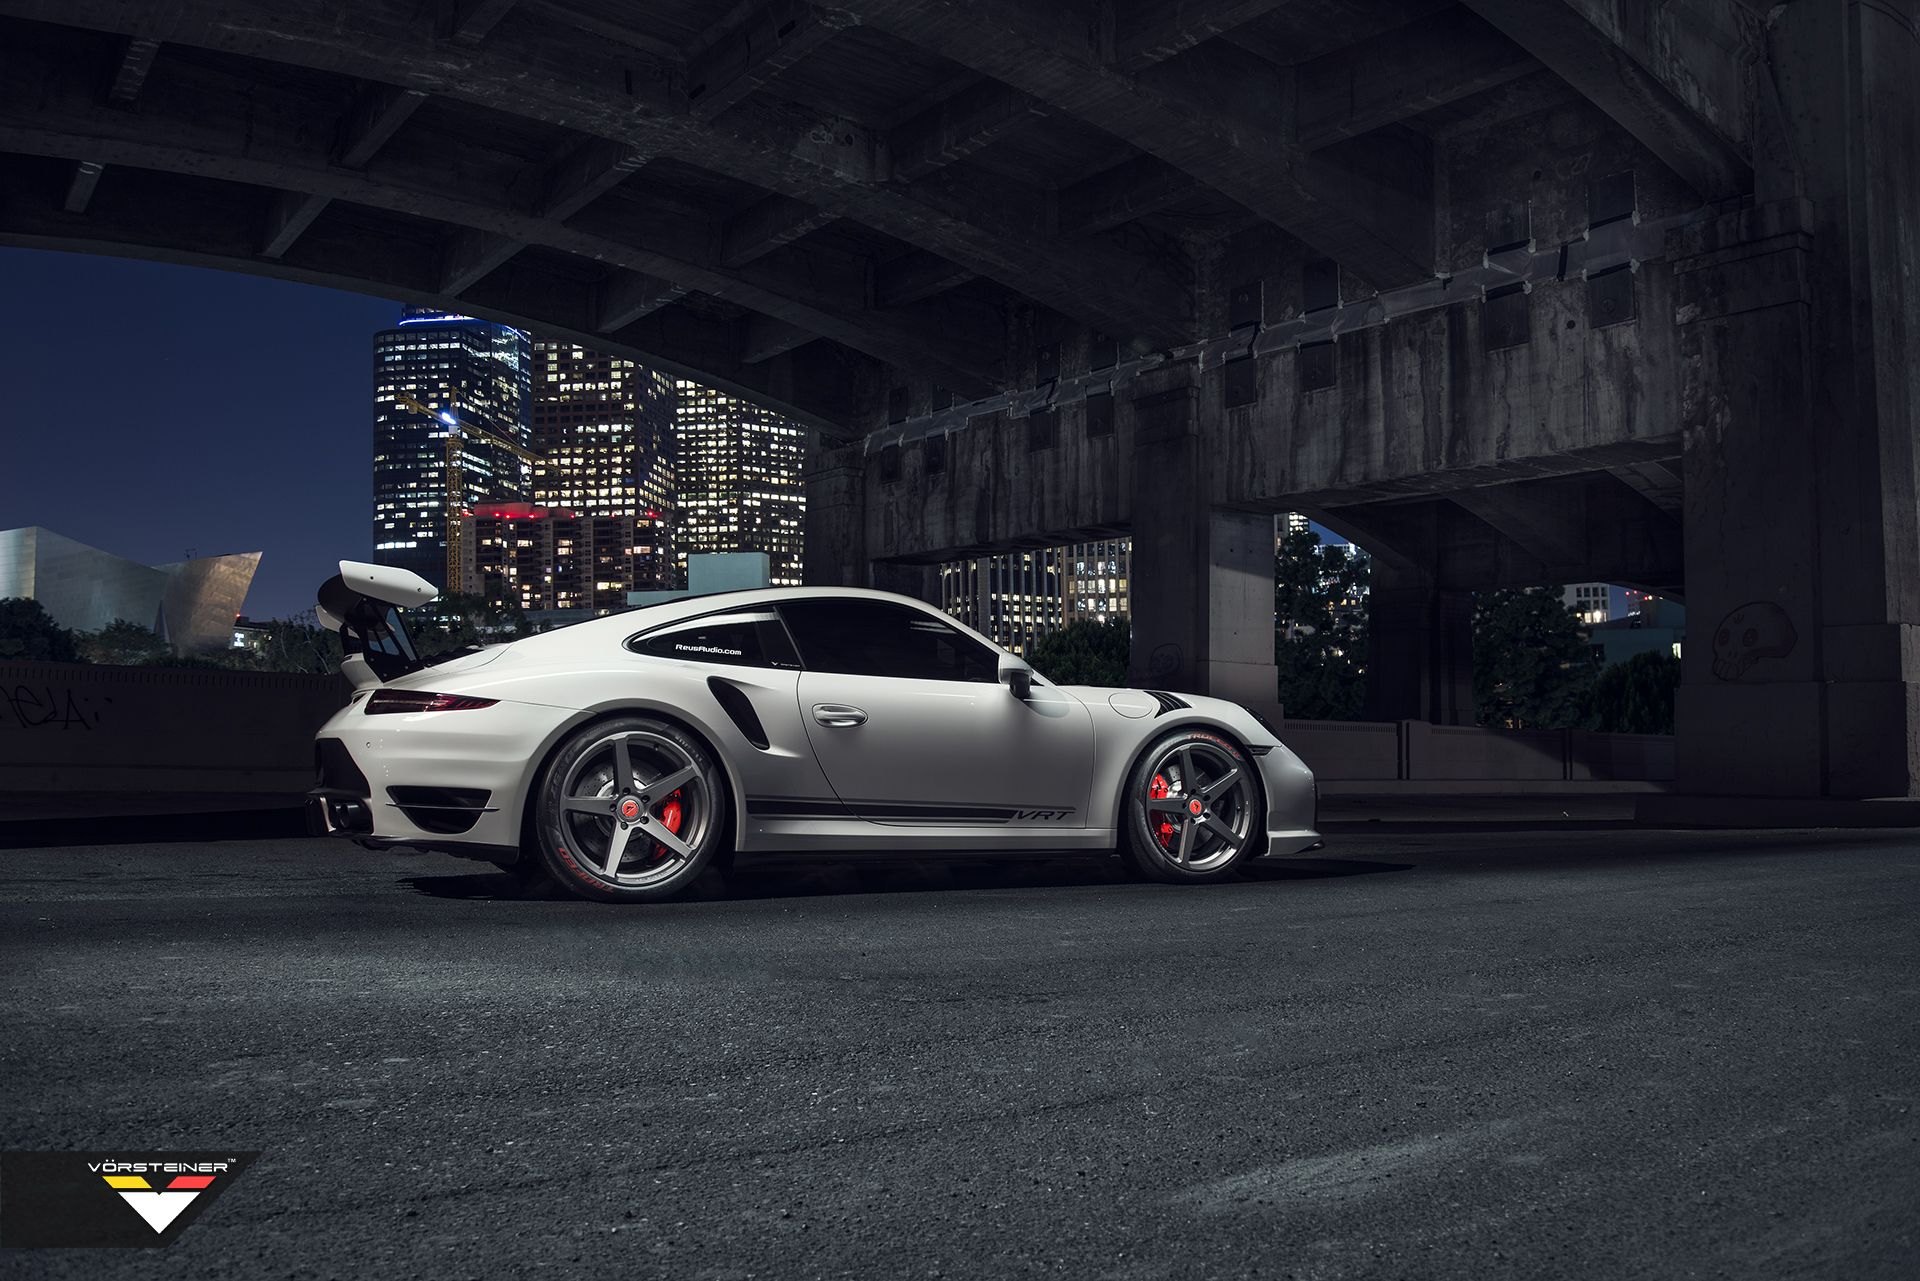 Aftermarket Side Scoops on White Porsche 911 - Photo by Vorstiner